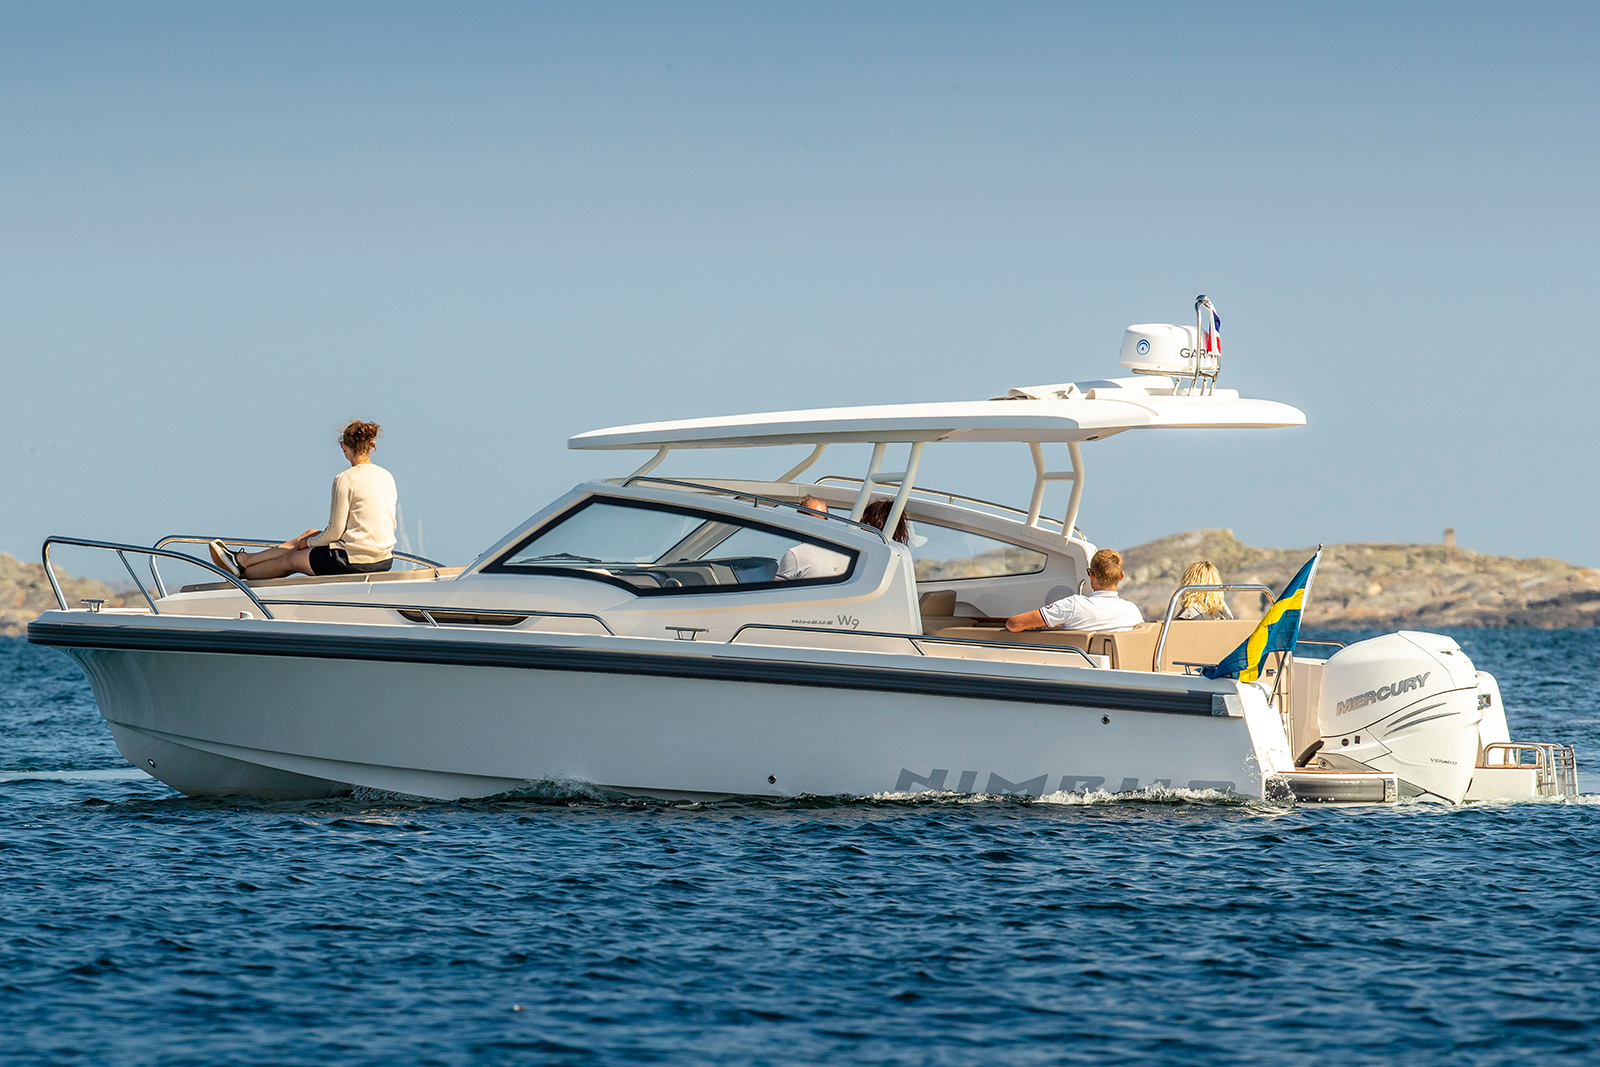 Nimbus W9 med T-top - Testa och provkör gärna båten hos Flipper Marin